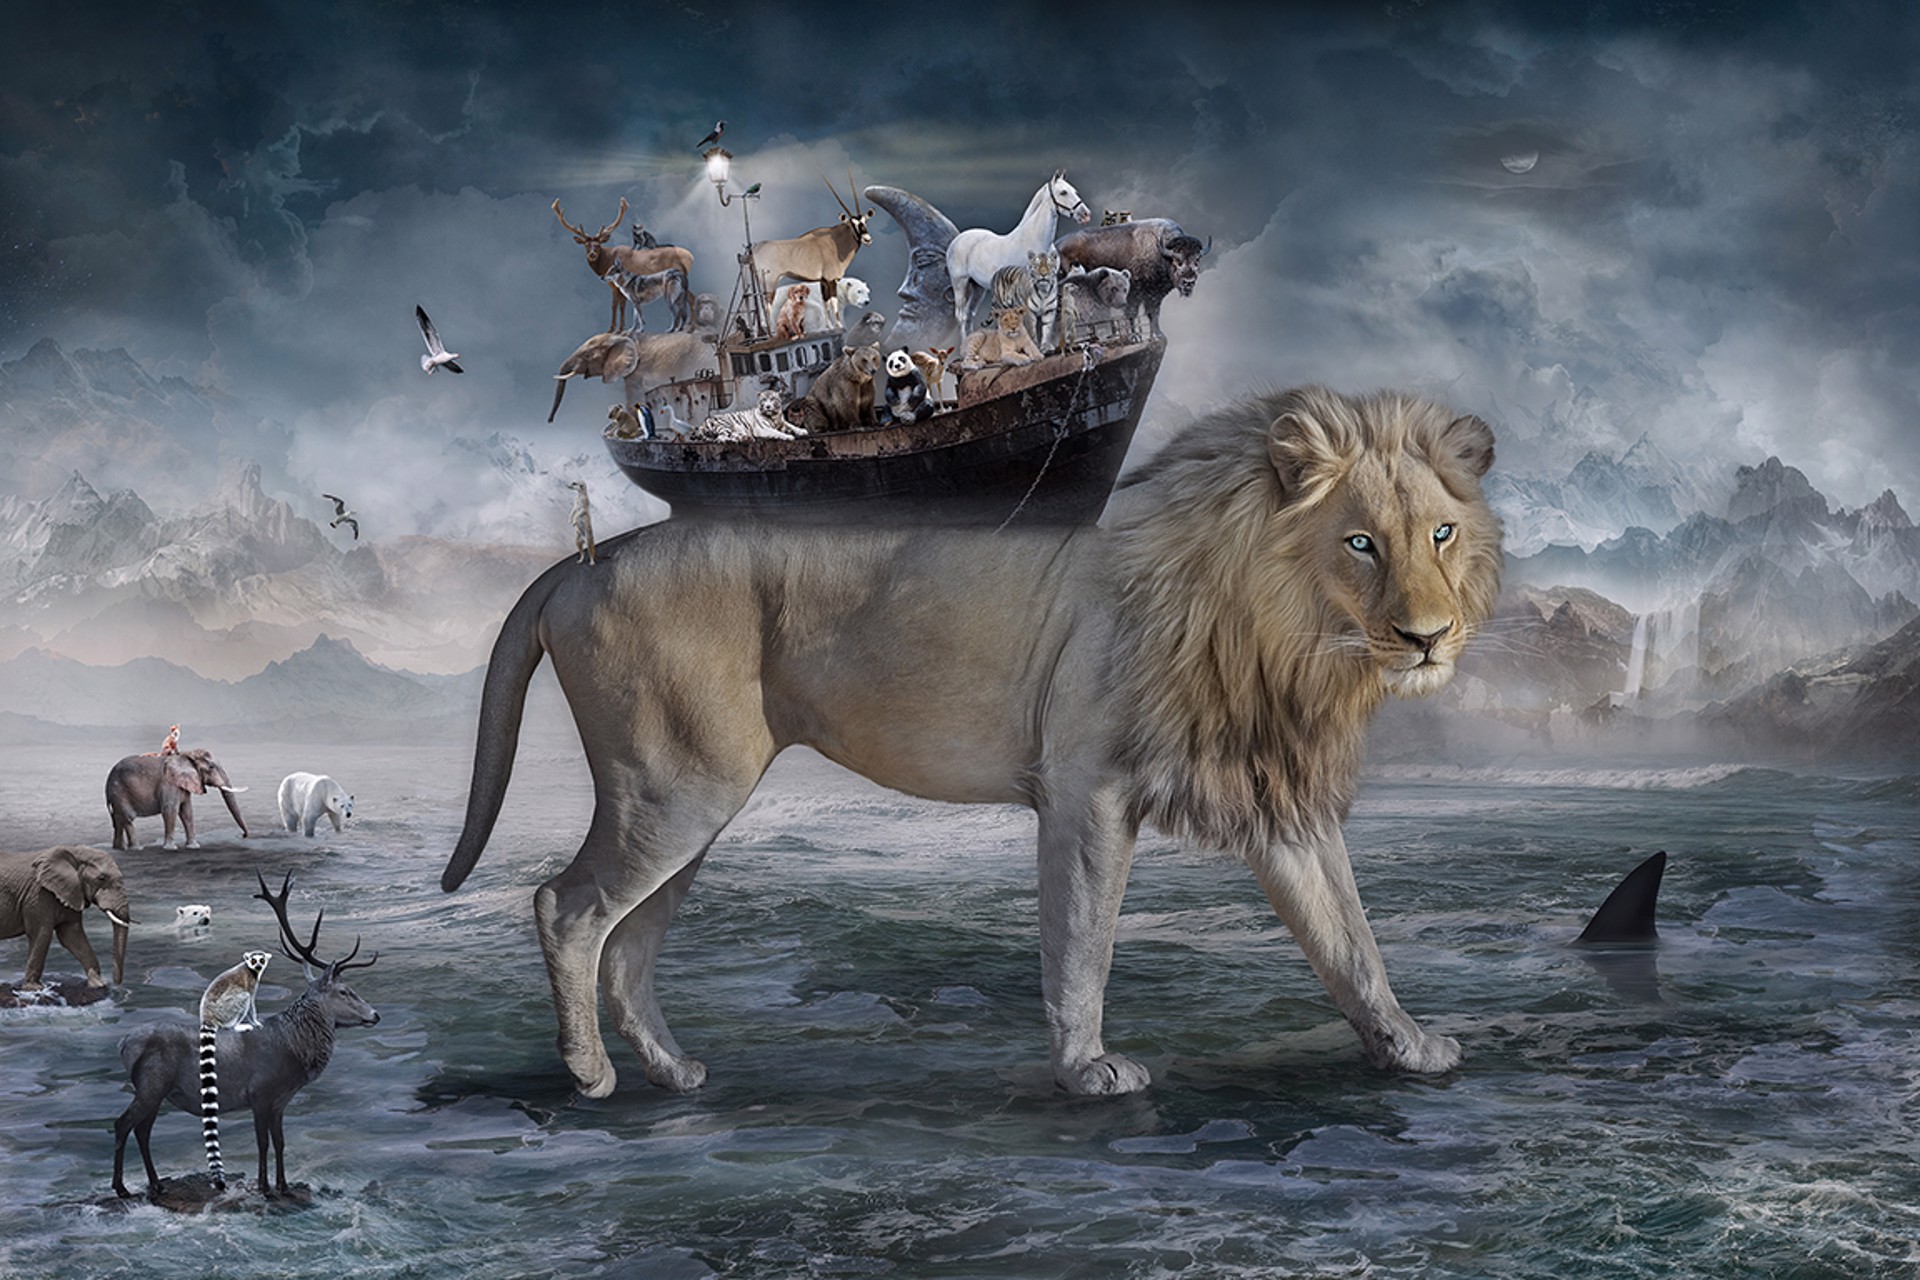 Noah - the Lions Heart by Marcin Owczarek